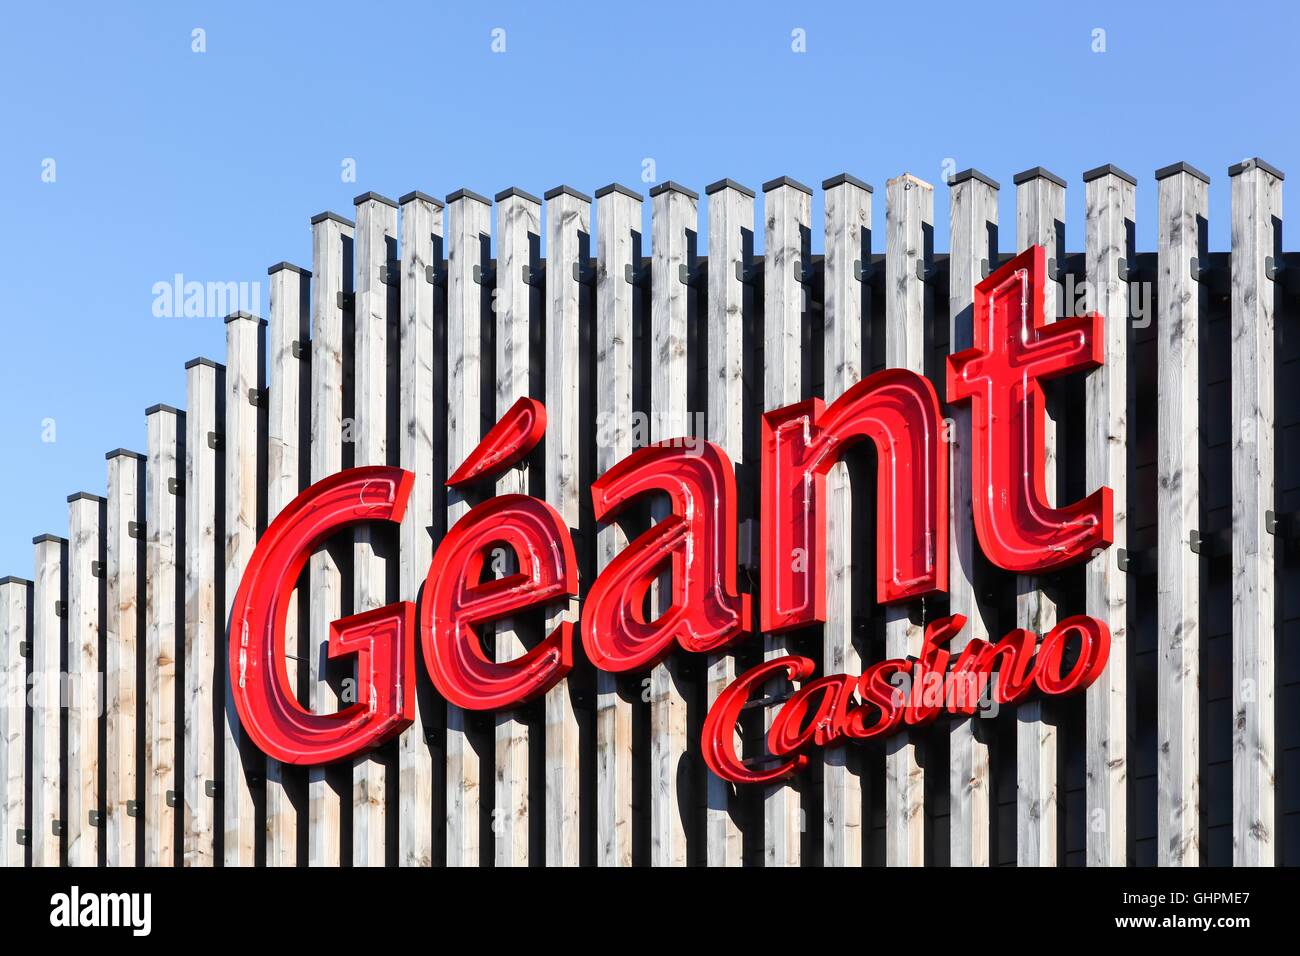 Geant Casino logo sur une façade Banque D'Images